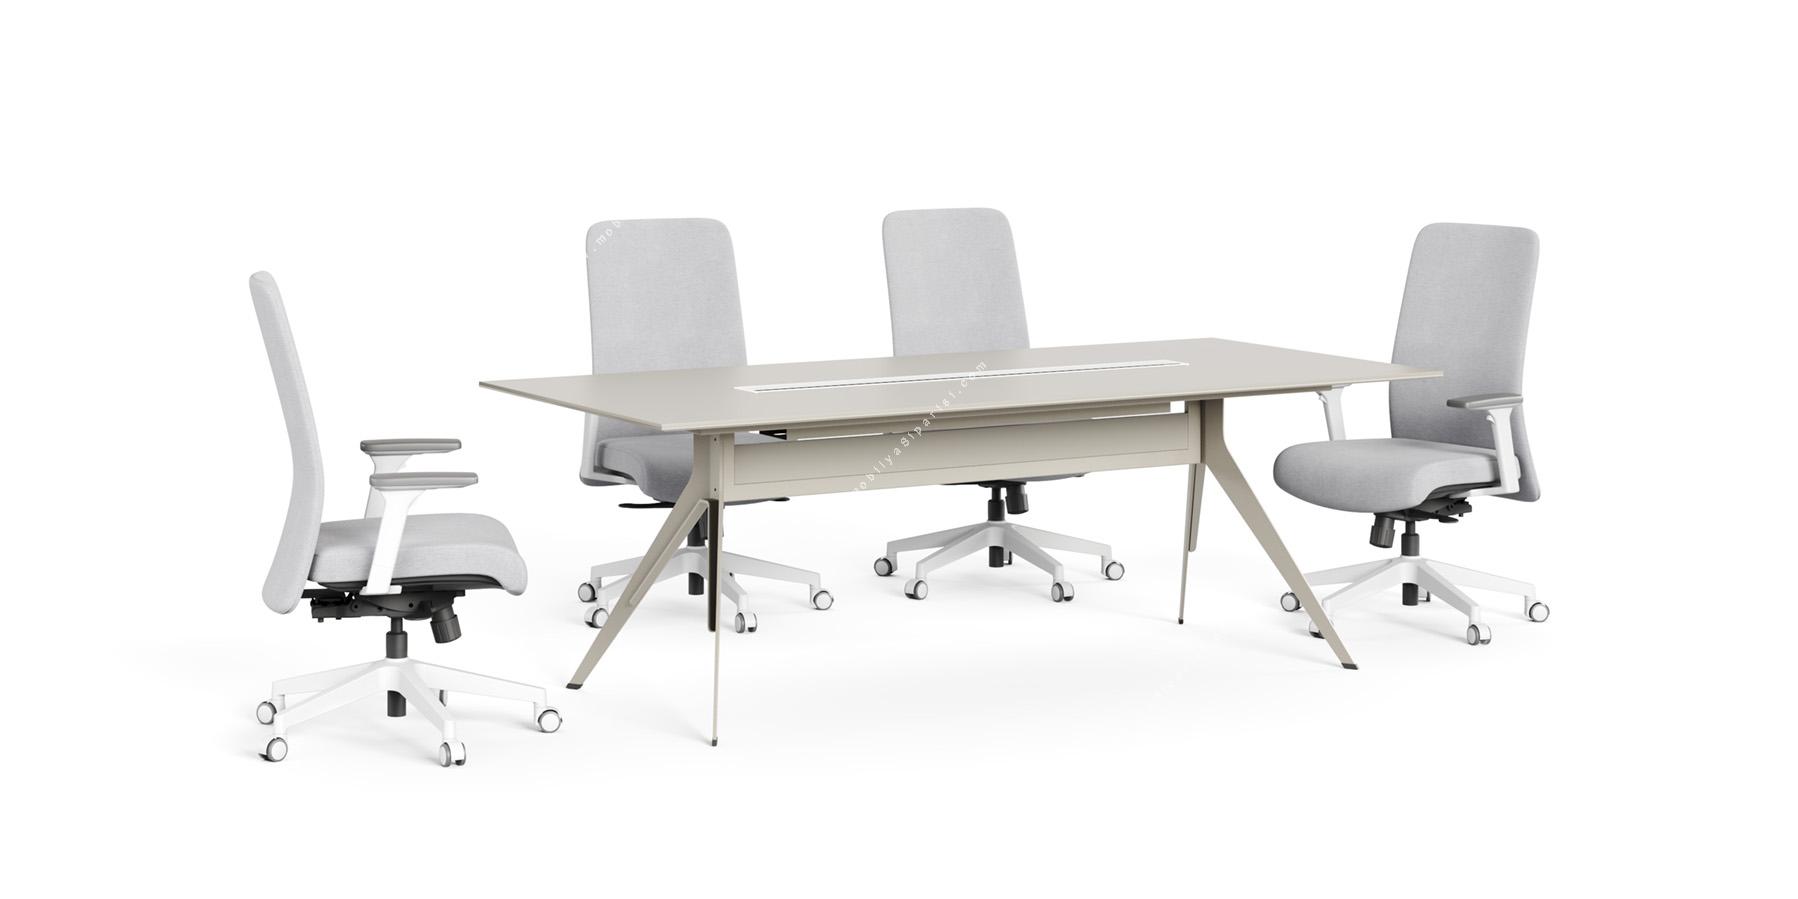 stark metal ayaklı toplantı masası 180cm